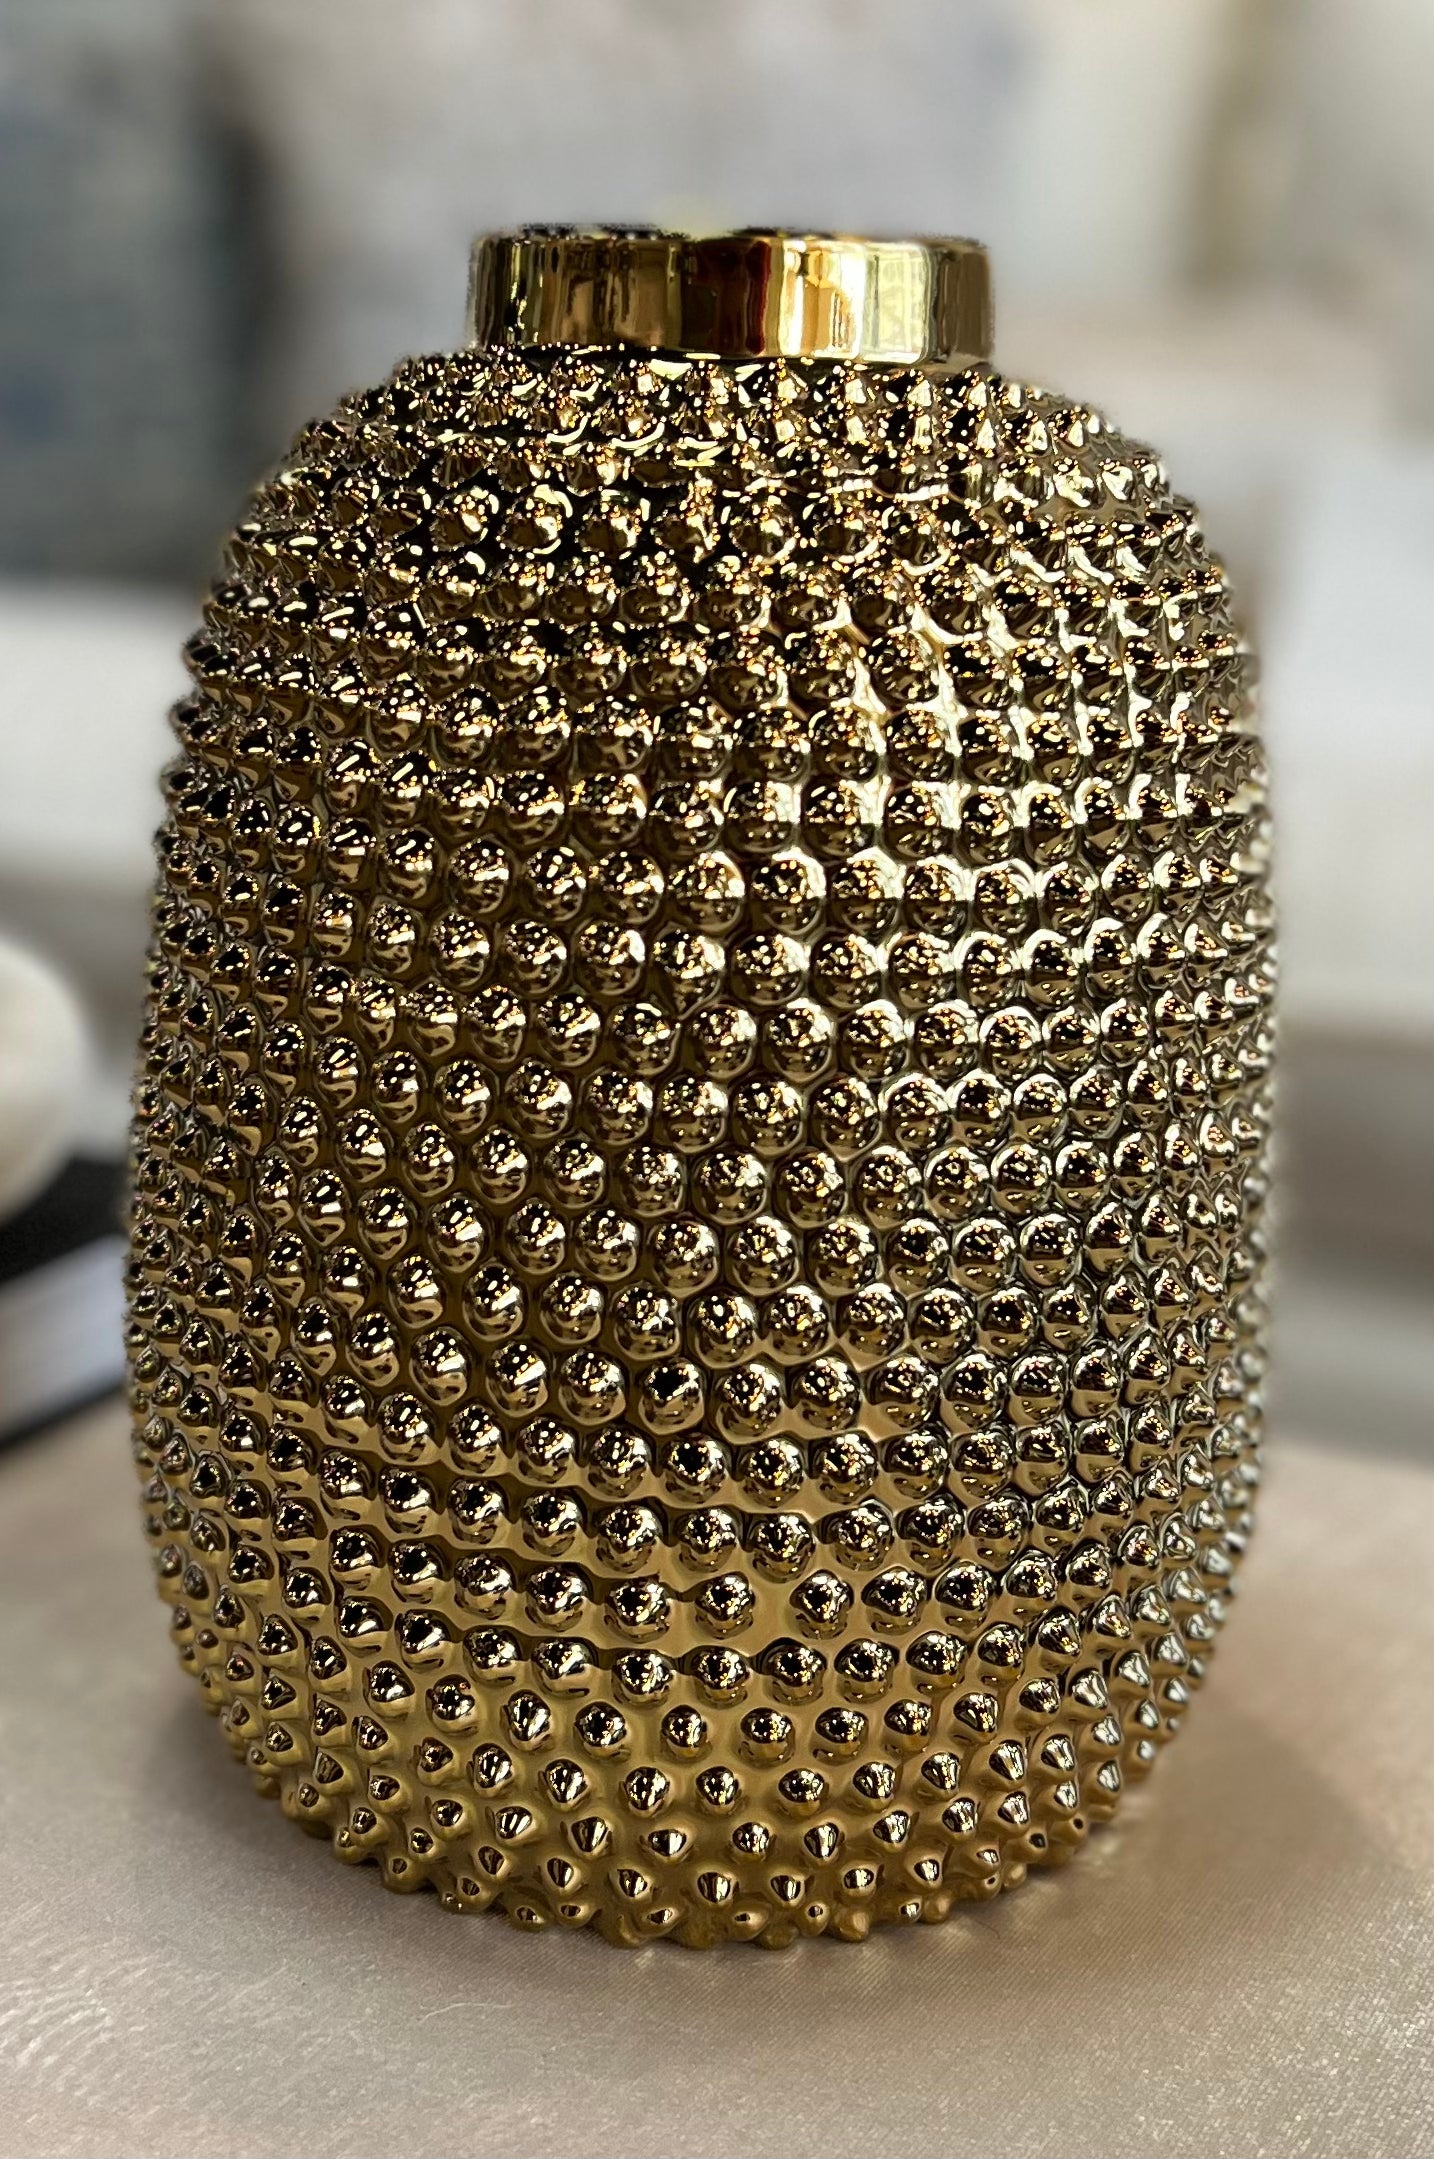 Gold Spiked Vase, 9.25"H